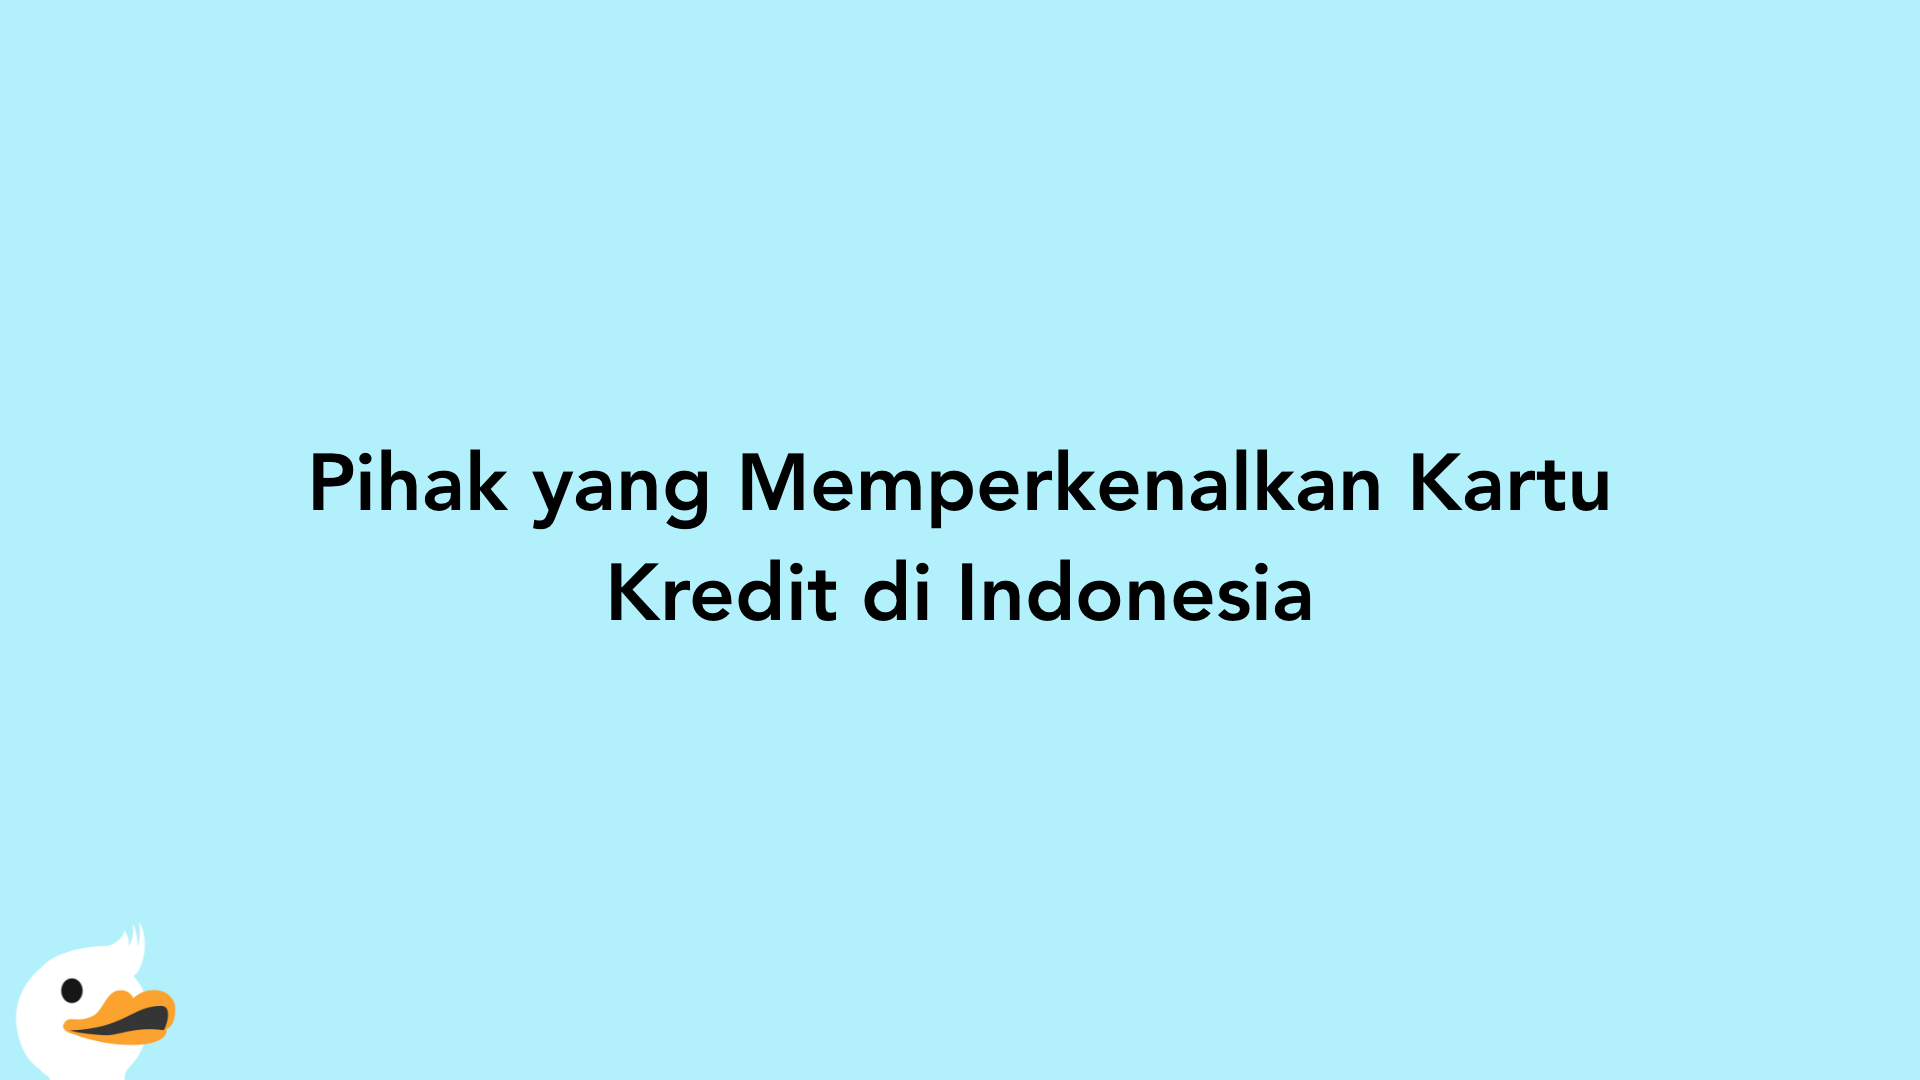 Pihak yang Memperkenalkan Kartu Kredit di Indonesia